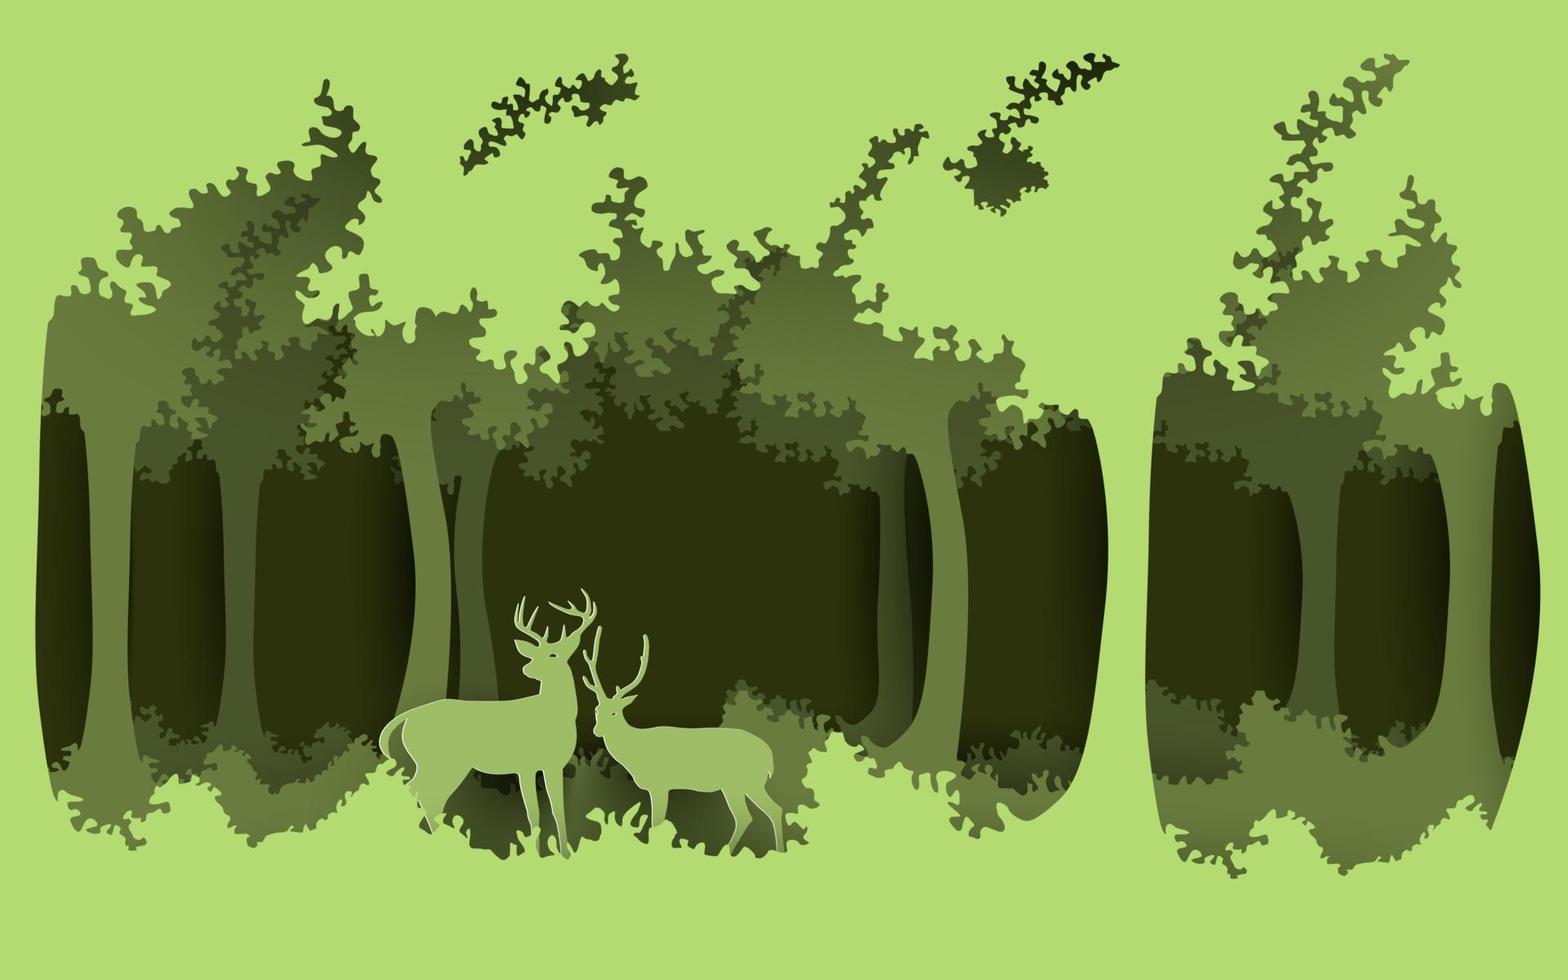 skog och miljö. rådjur i skogen. papperskonstdesign. vektor